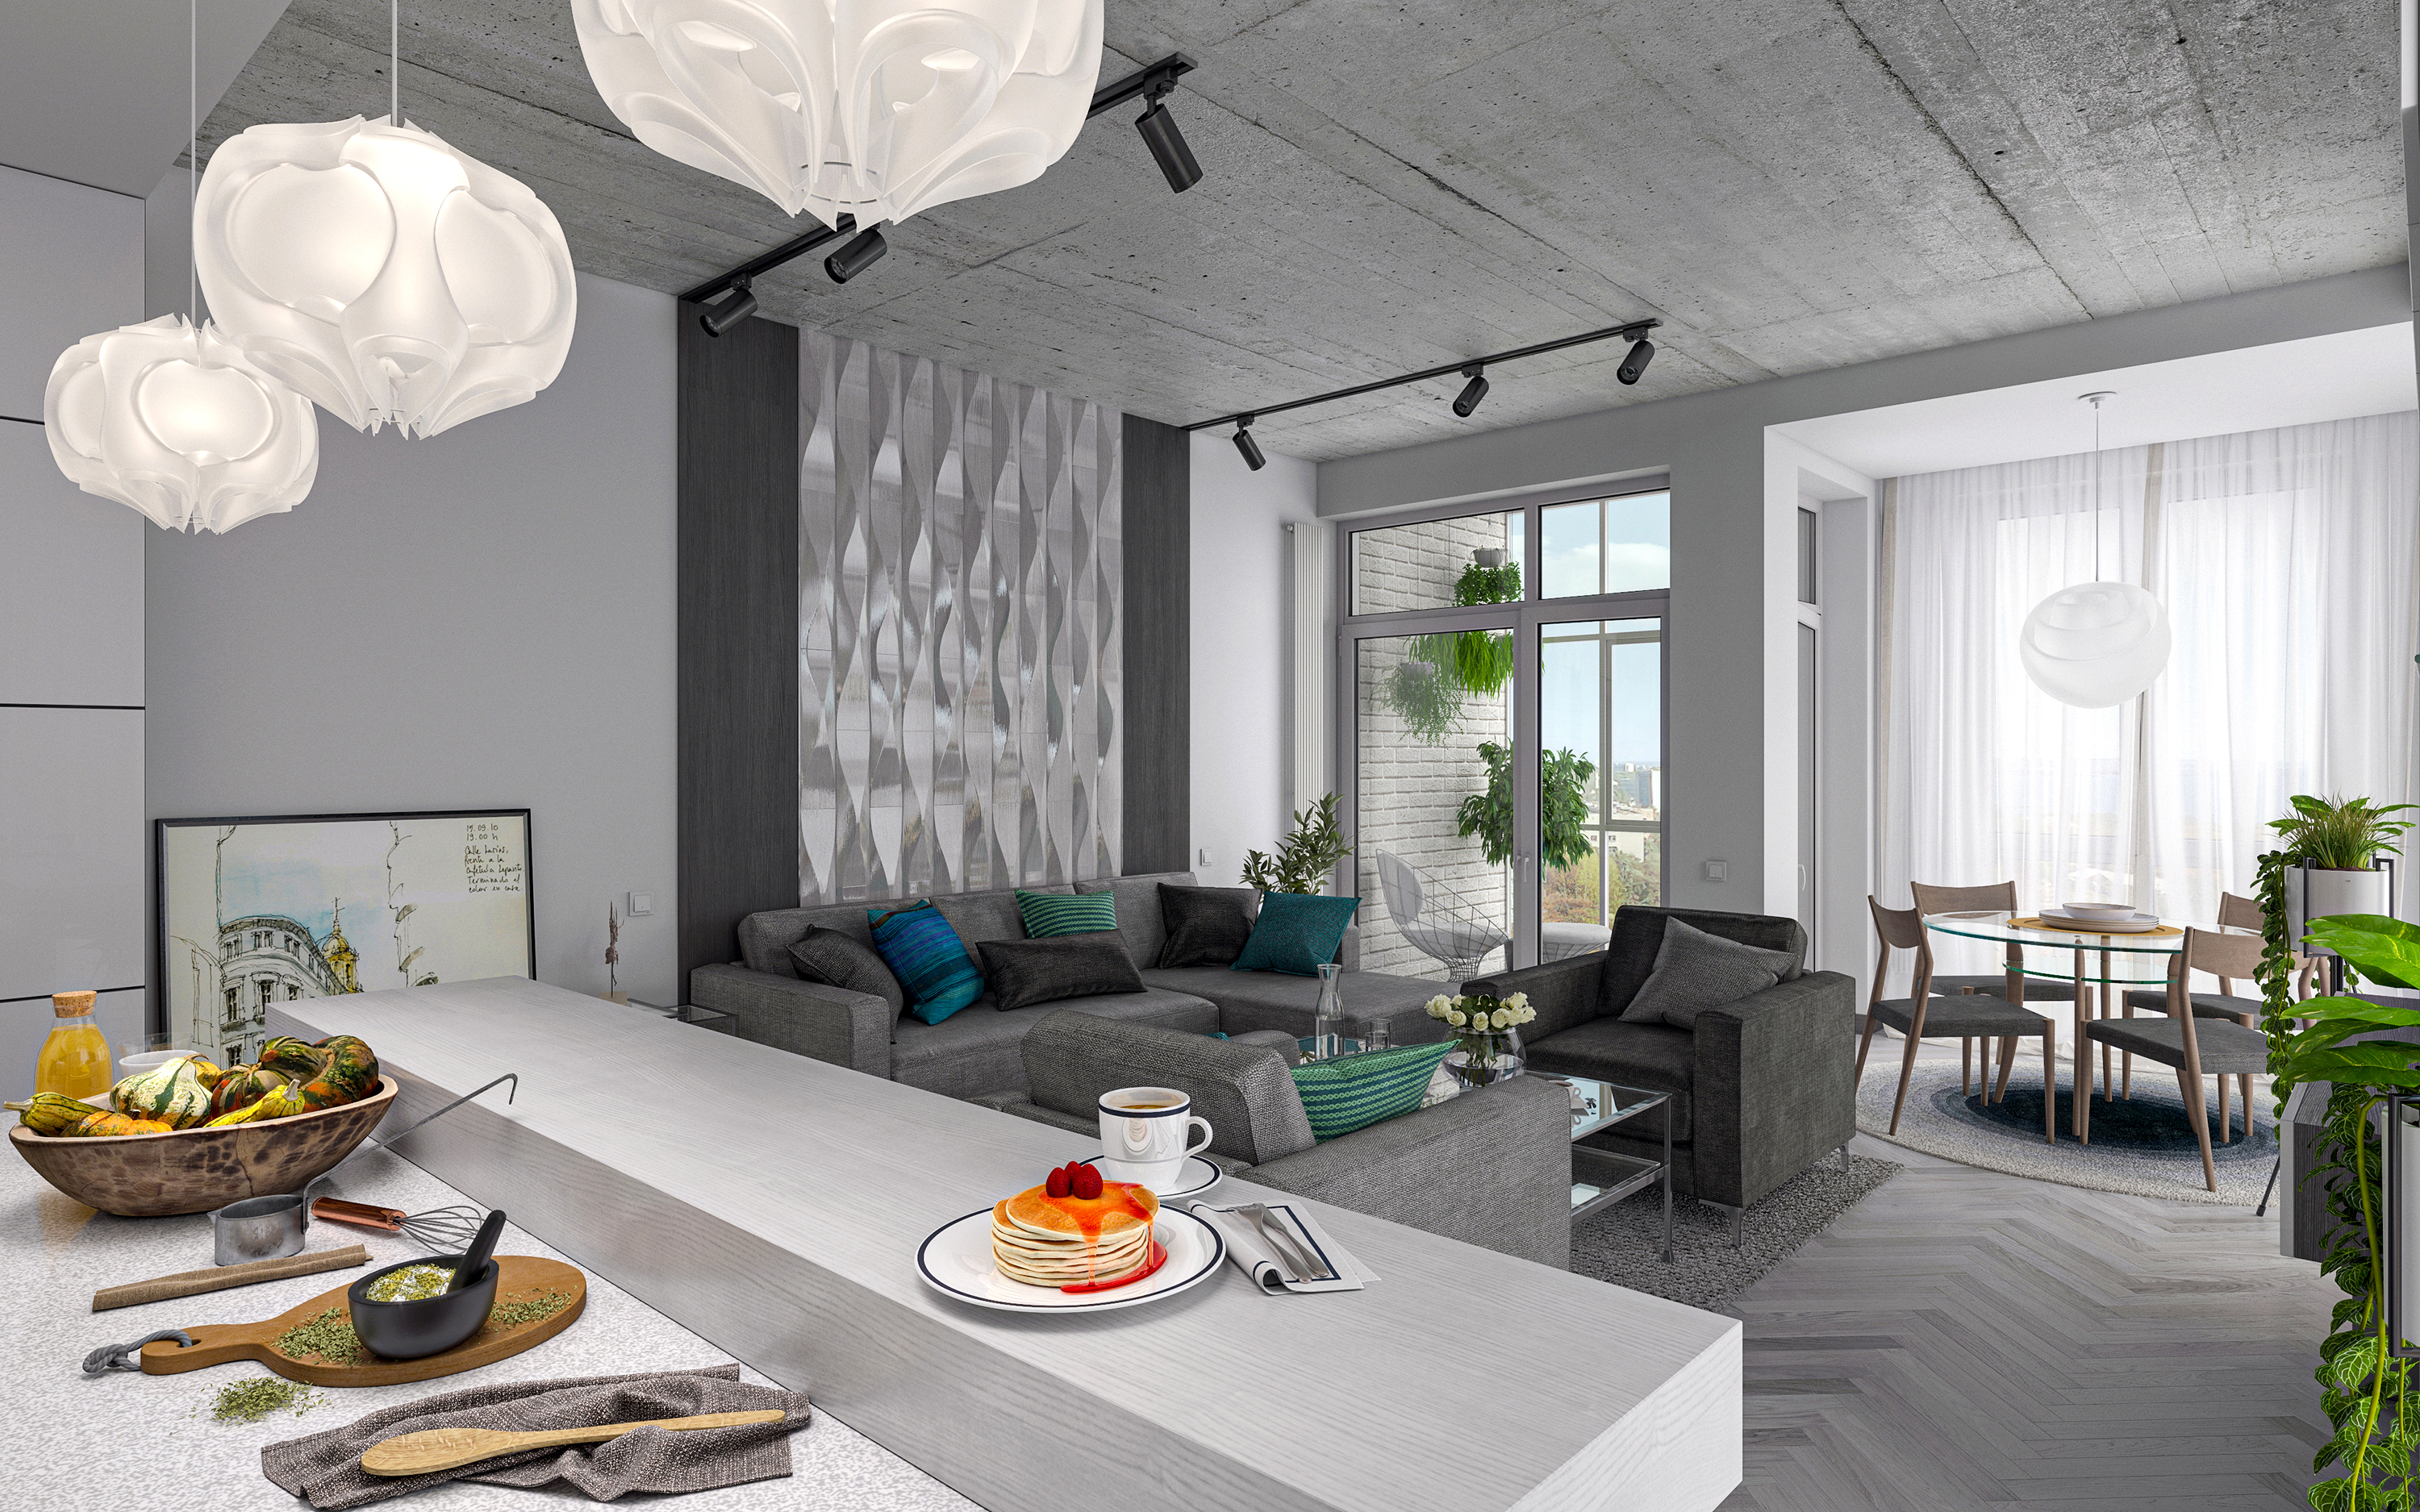 Appartamento con una camera da letto S66 in 3d max corona render immagine